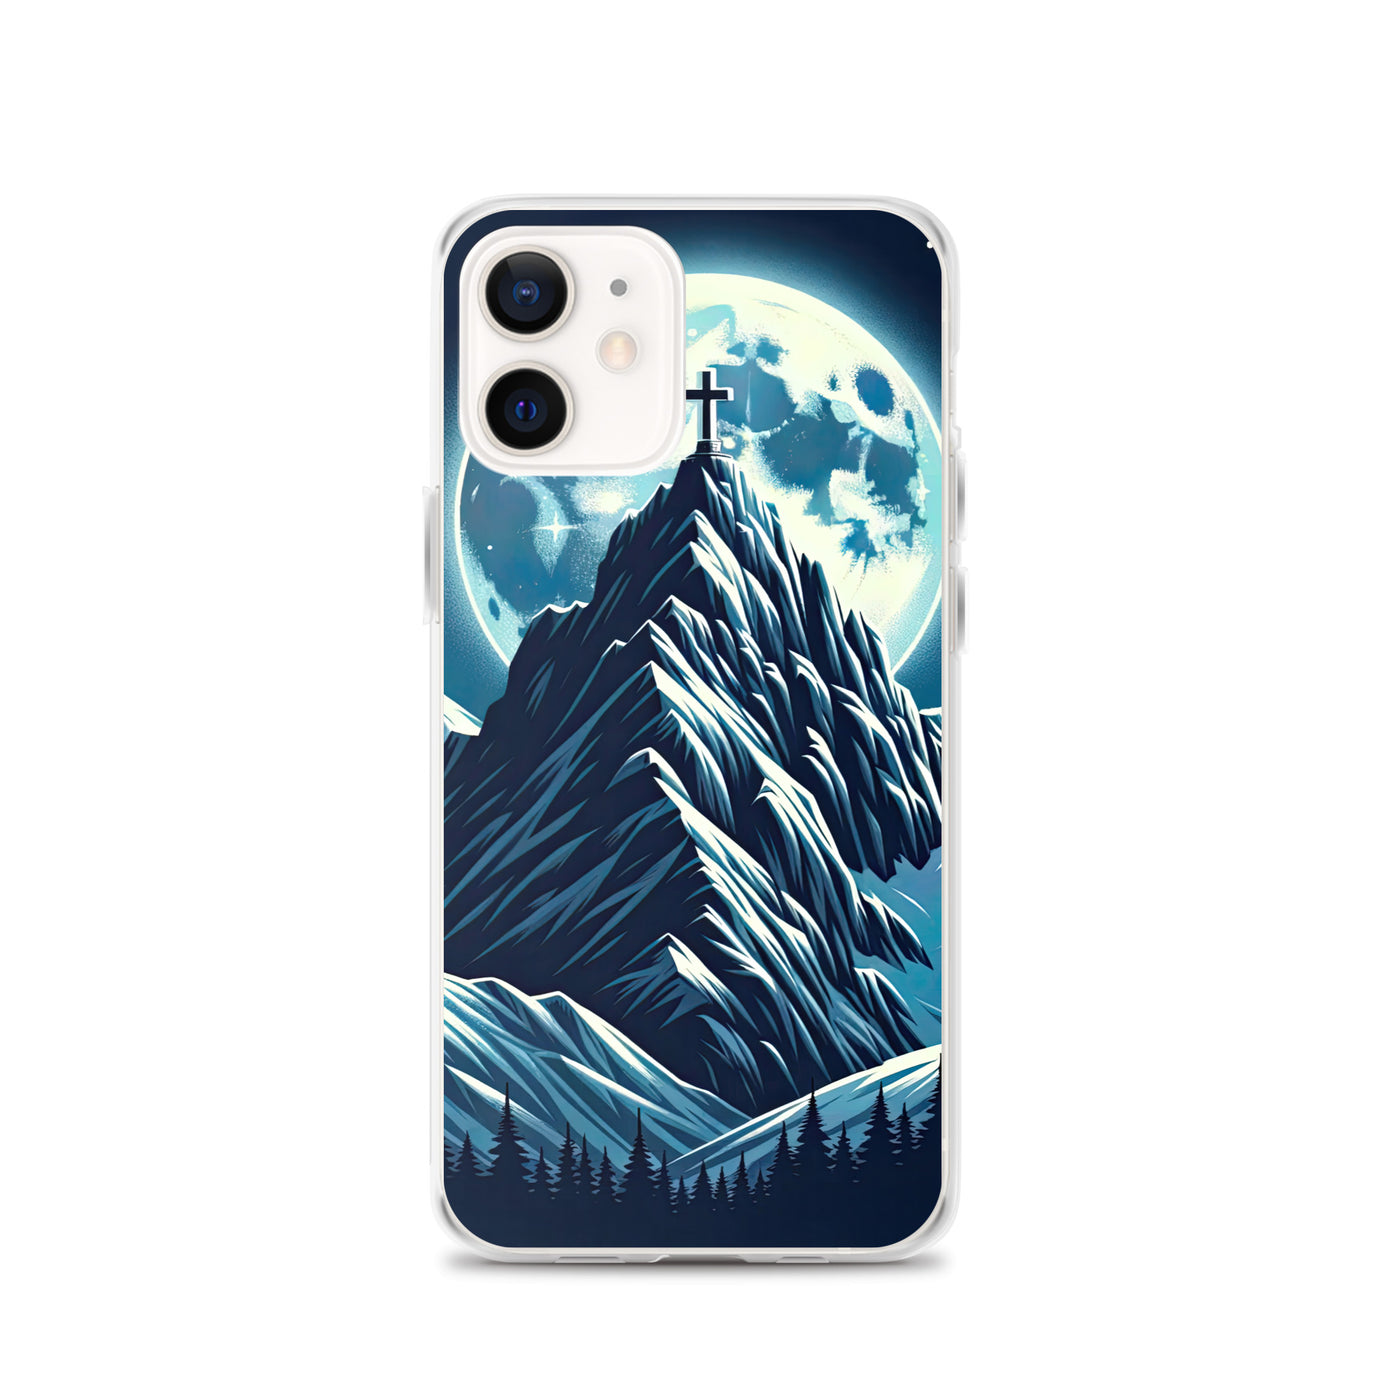 Mondnacht und Gipfelkreuz in den Alpen, glitzernde Schneegipfel - iPhone Schutzhülle (durchsichtig) berge xxx yyy zzz iPhone 12